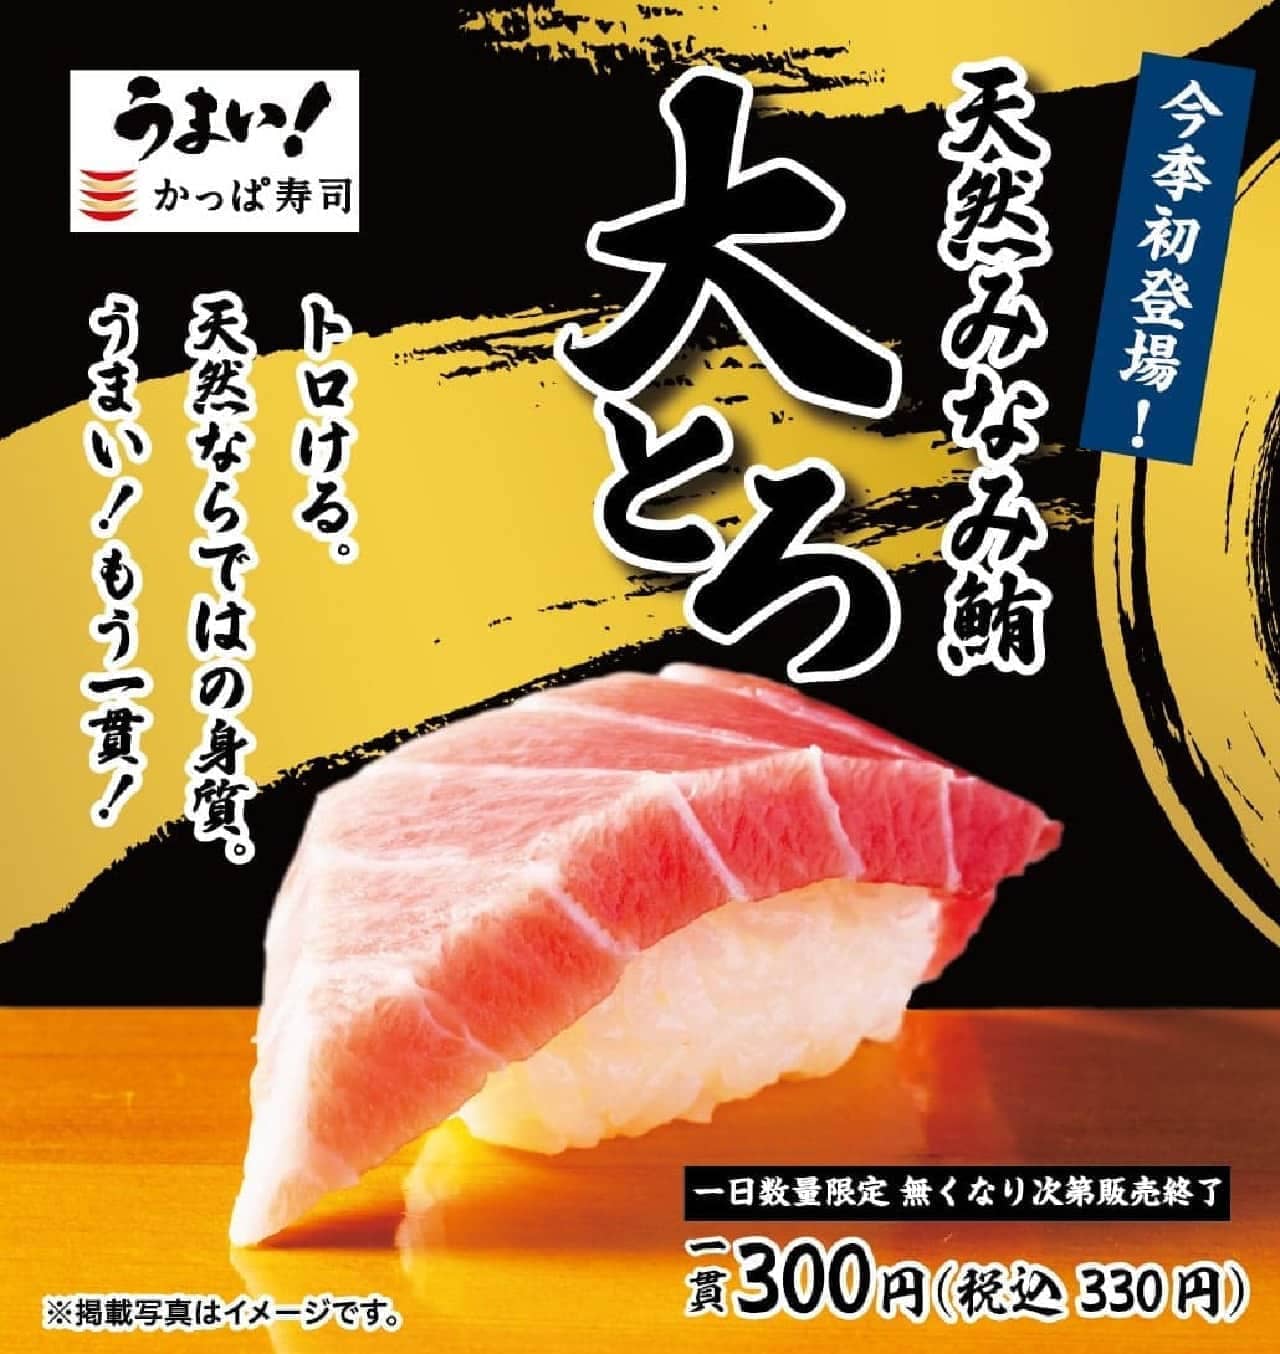 Kappa Sushi "Natural Minami Tuna Tuna Tuna Tuna